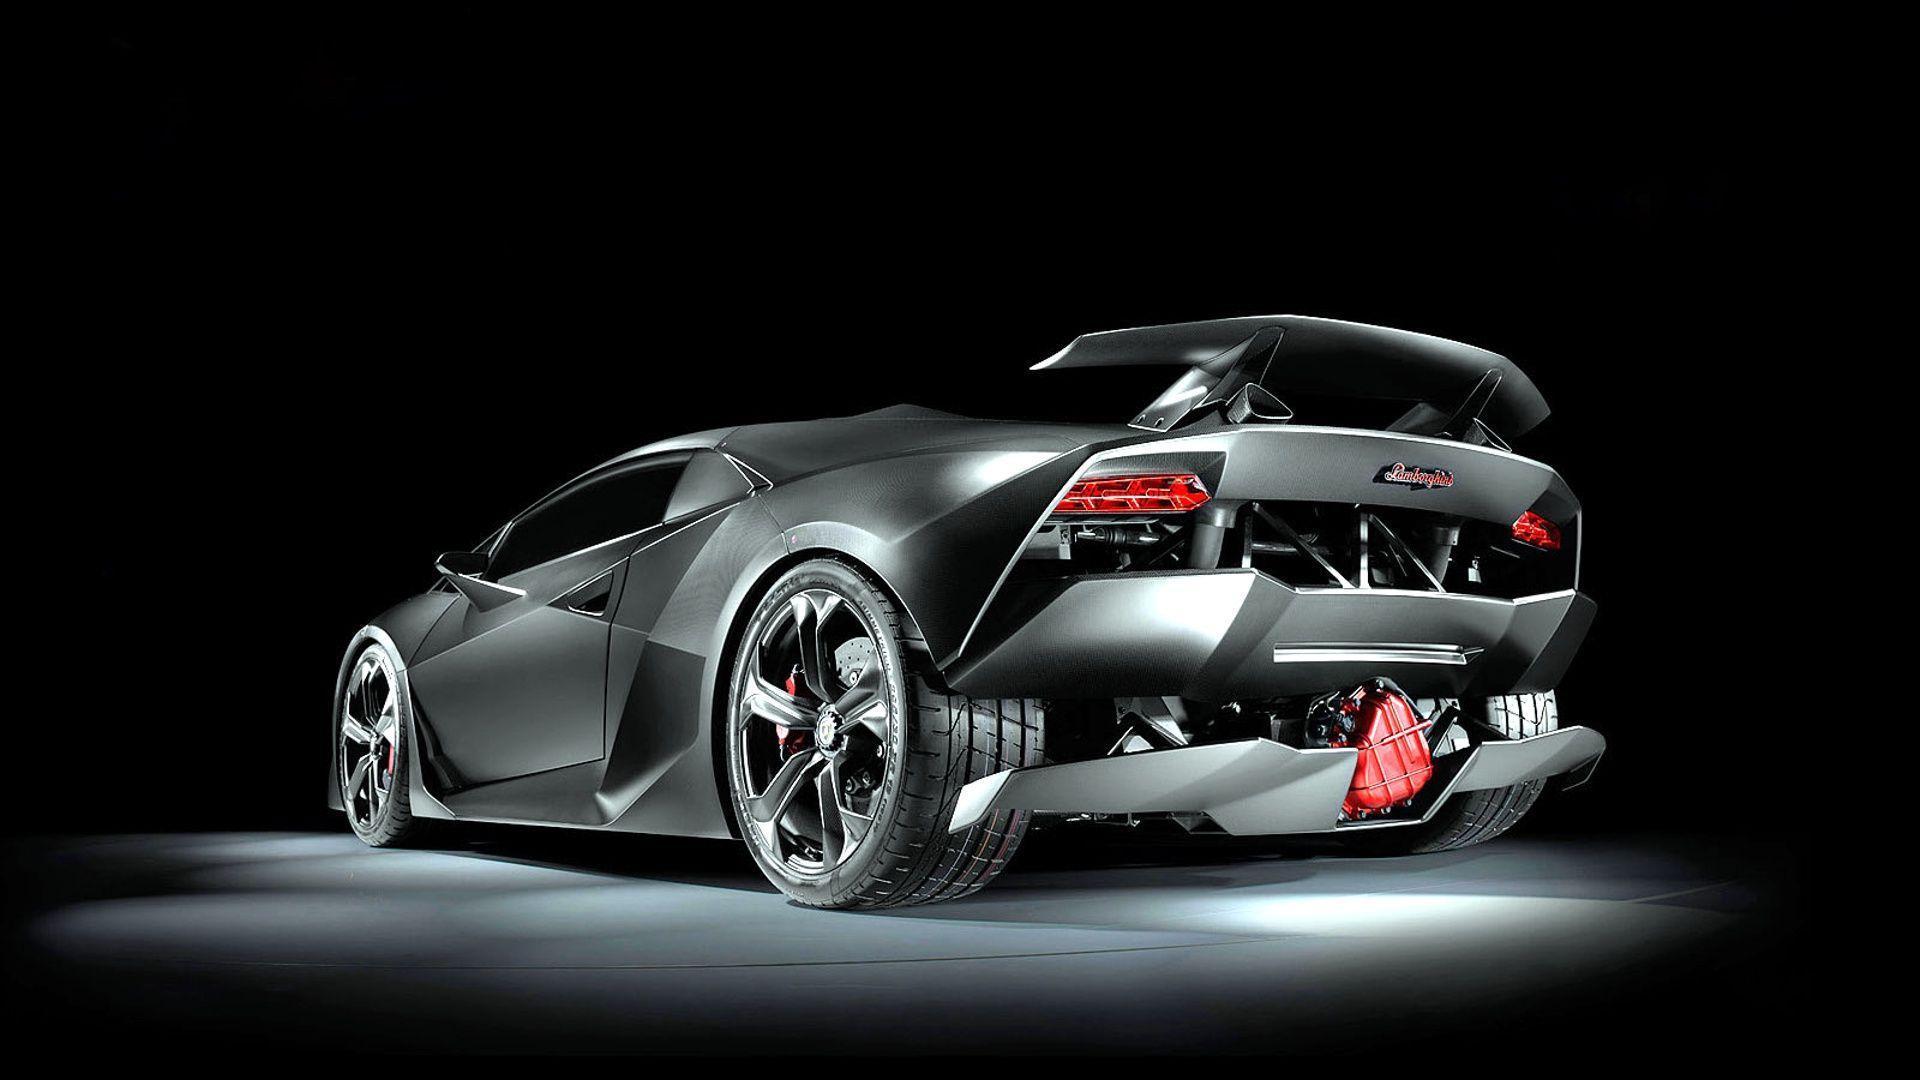 Lamborghini sesto elemento in rear view on HD wallpaper